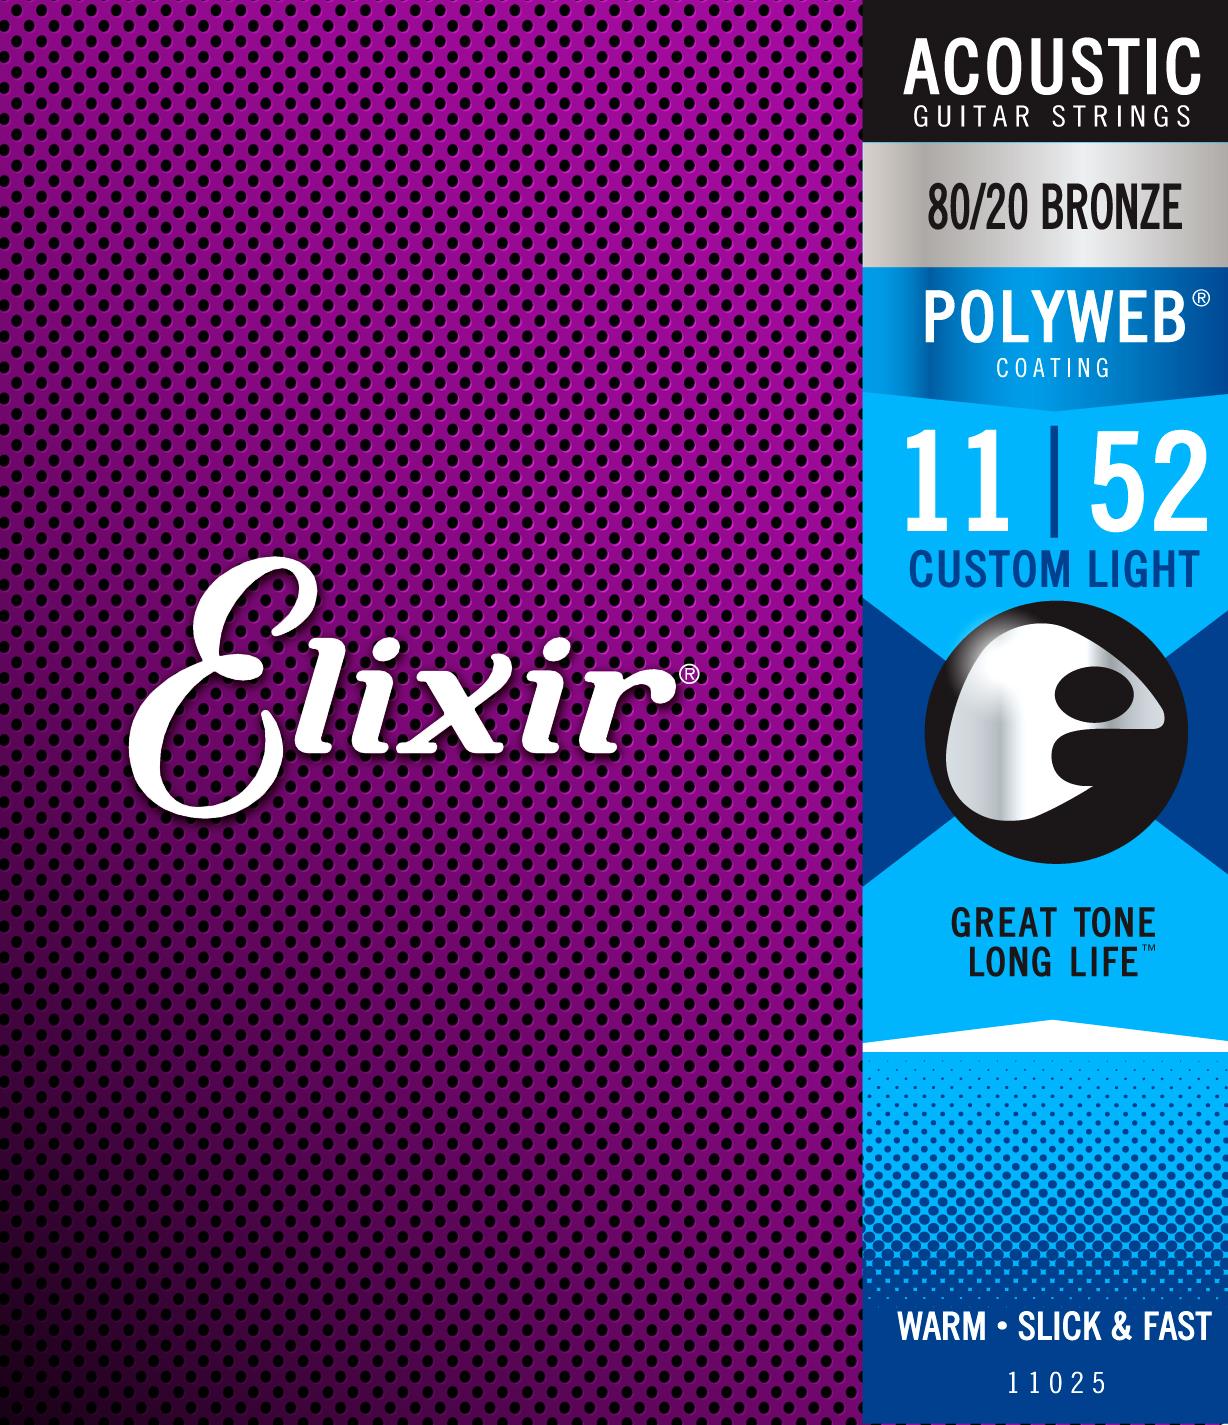 elixir-11025-8020-bronze-polyweb-custom-light-11-52-2 ELIXIR: 11-52 – Elixir POLYWEB 80/20 Bronze 